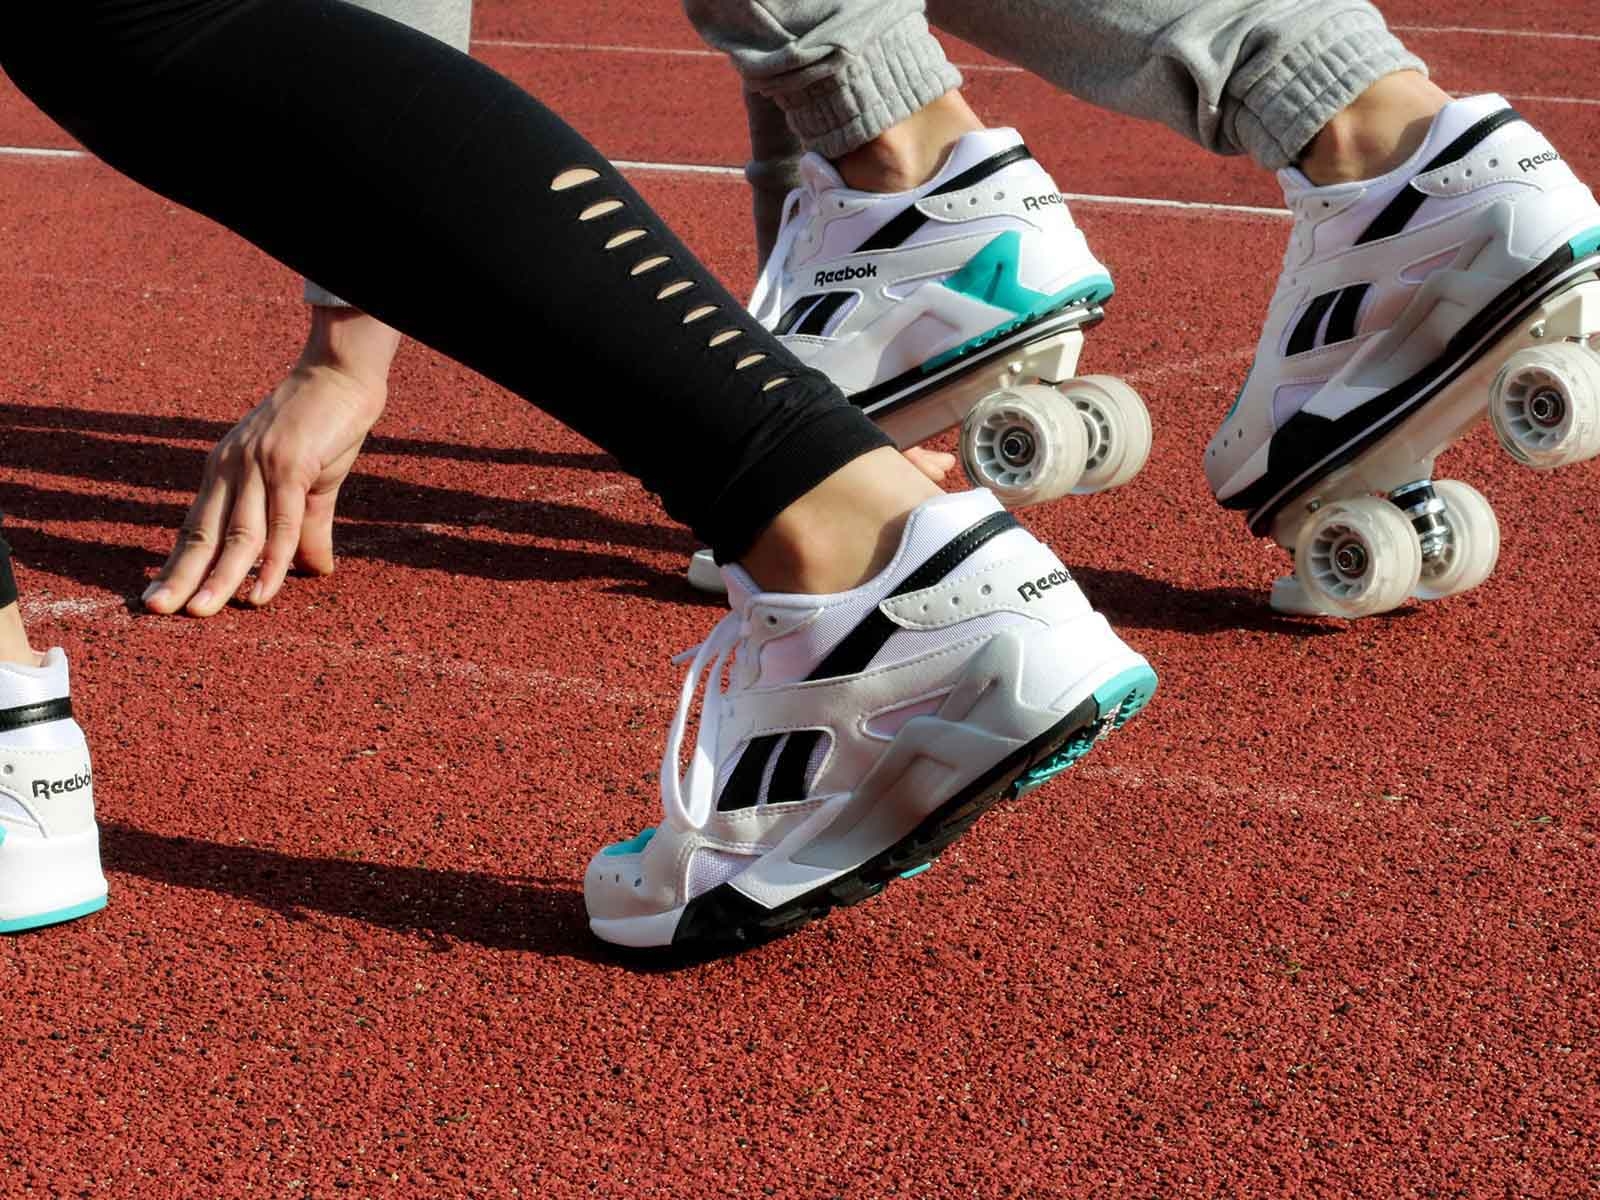 Flaneurz: Transformez vos baskets en patins à roulettes